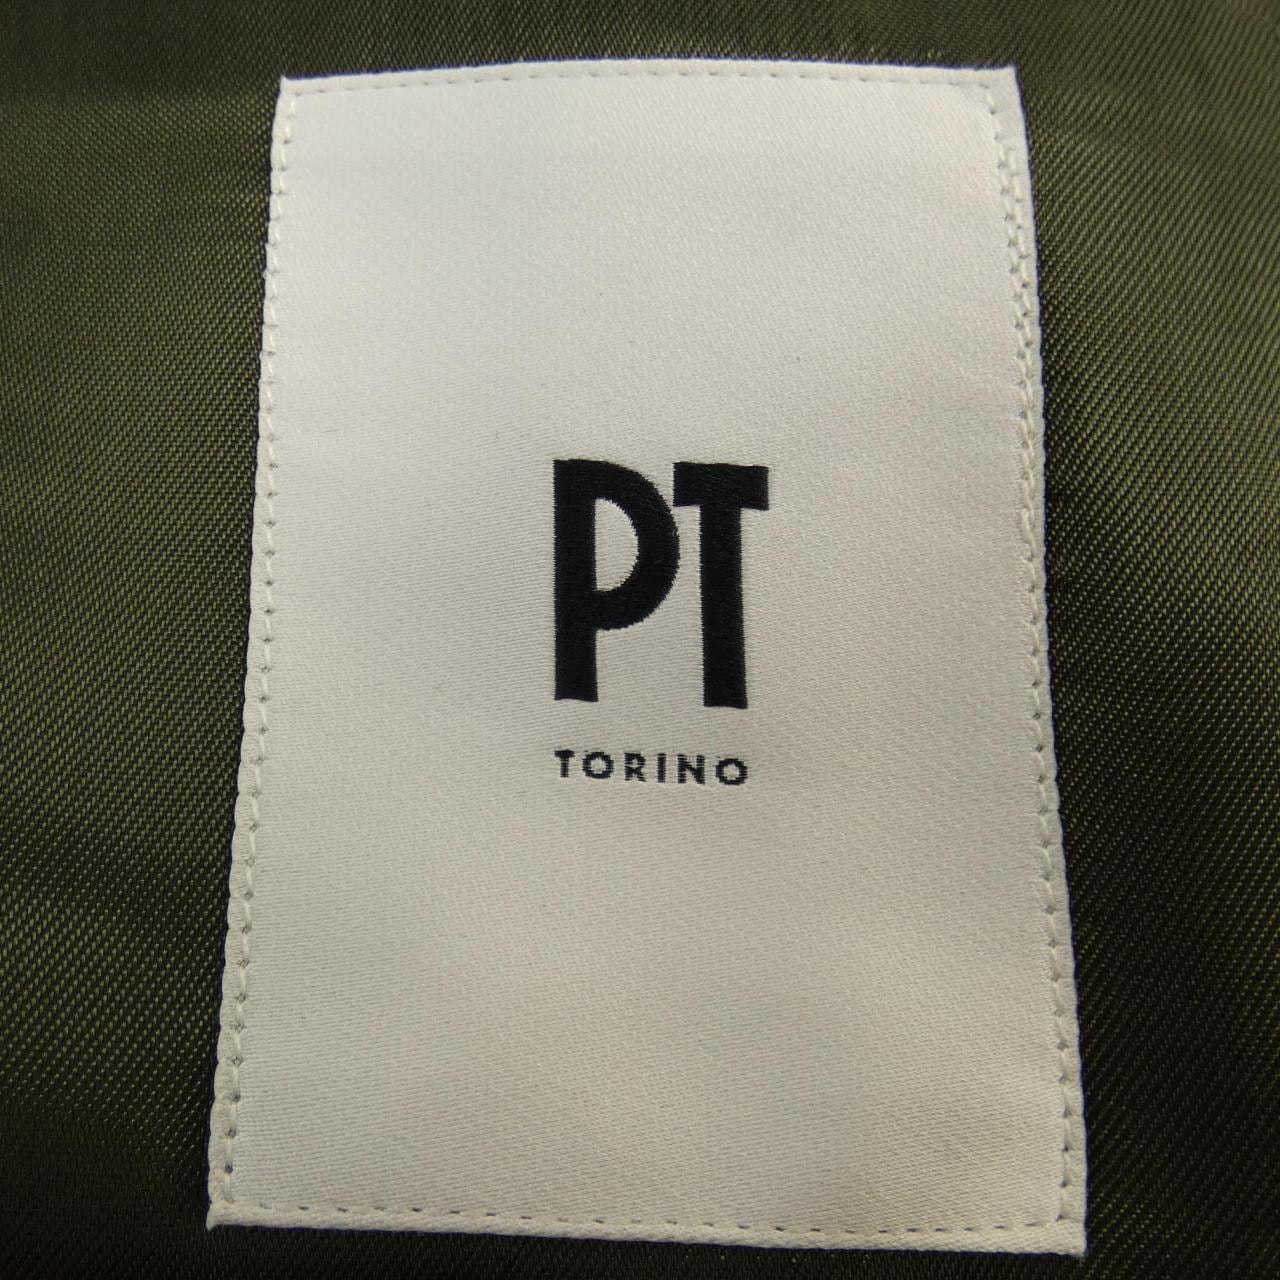 ピーティートリノ PT TORINO ジャケット